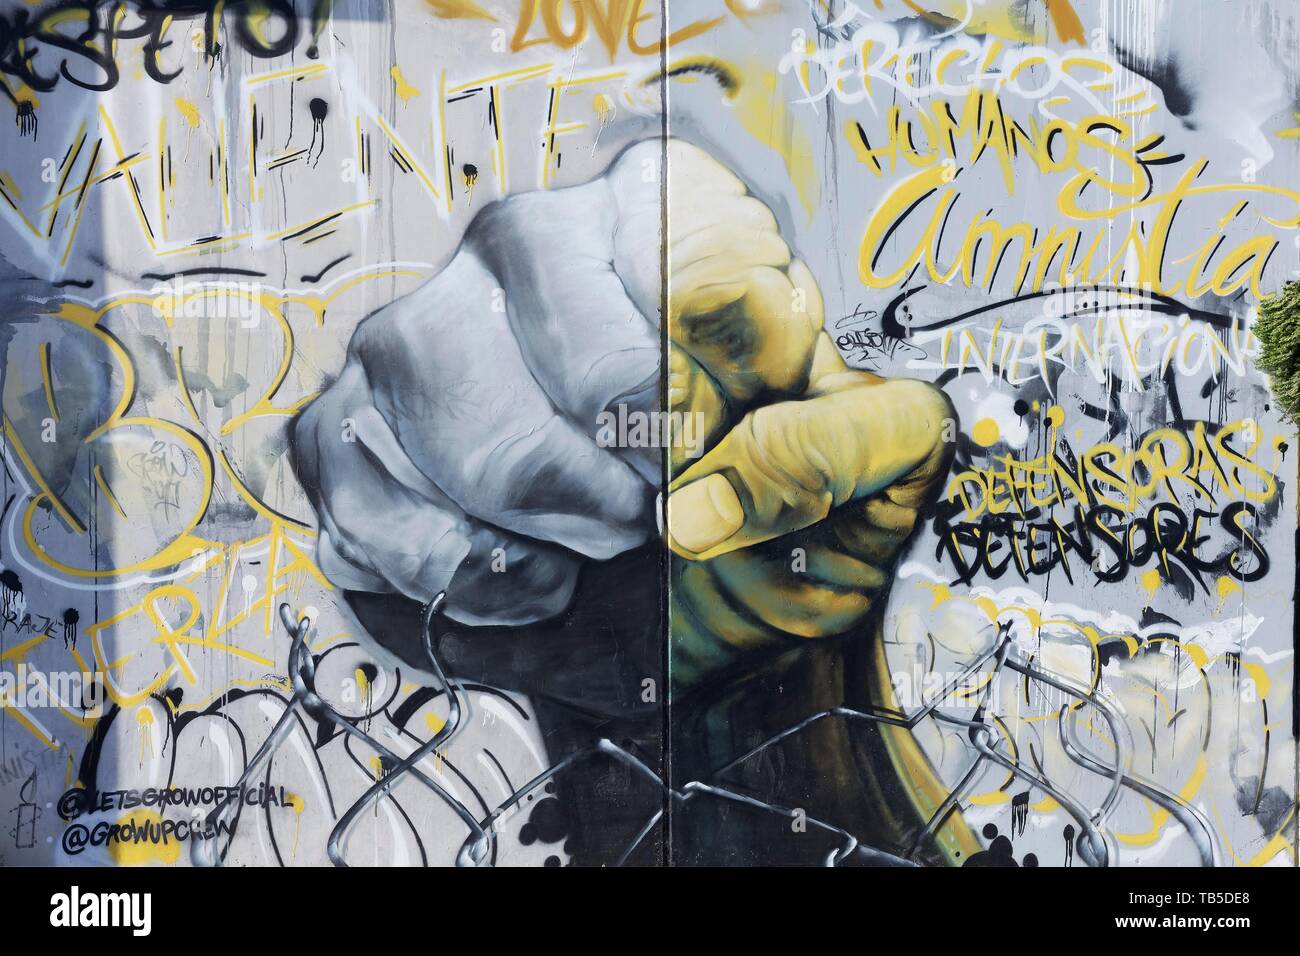 Graffiti, pugno chiuso, di protesta, resistenza, murale, Arte di strada, città vecchia El Carme, Valencia, Spagna Foto Stock